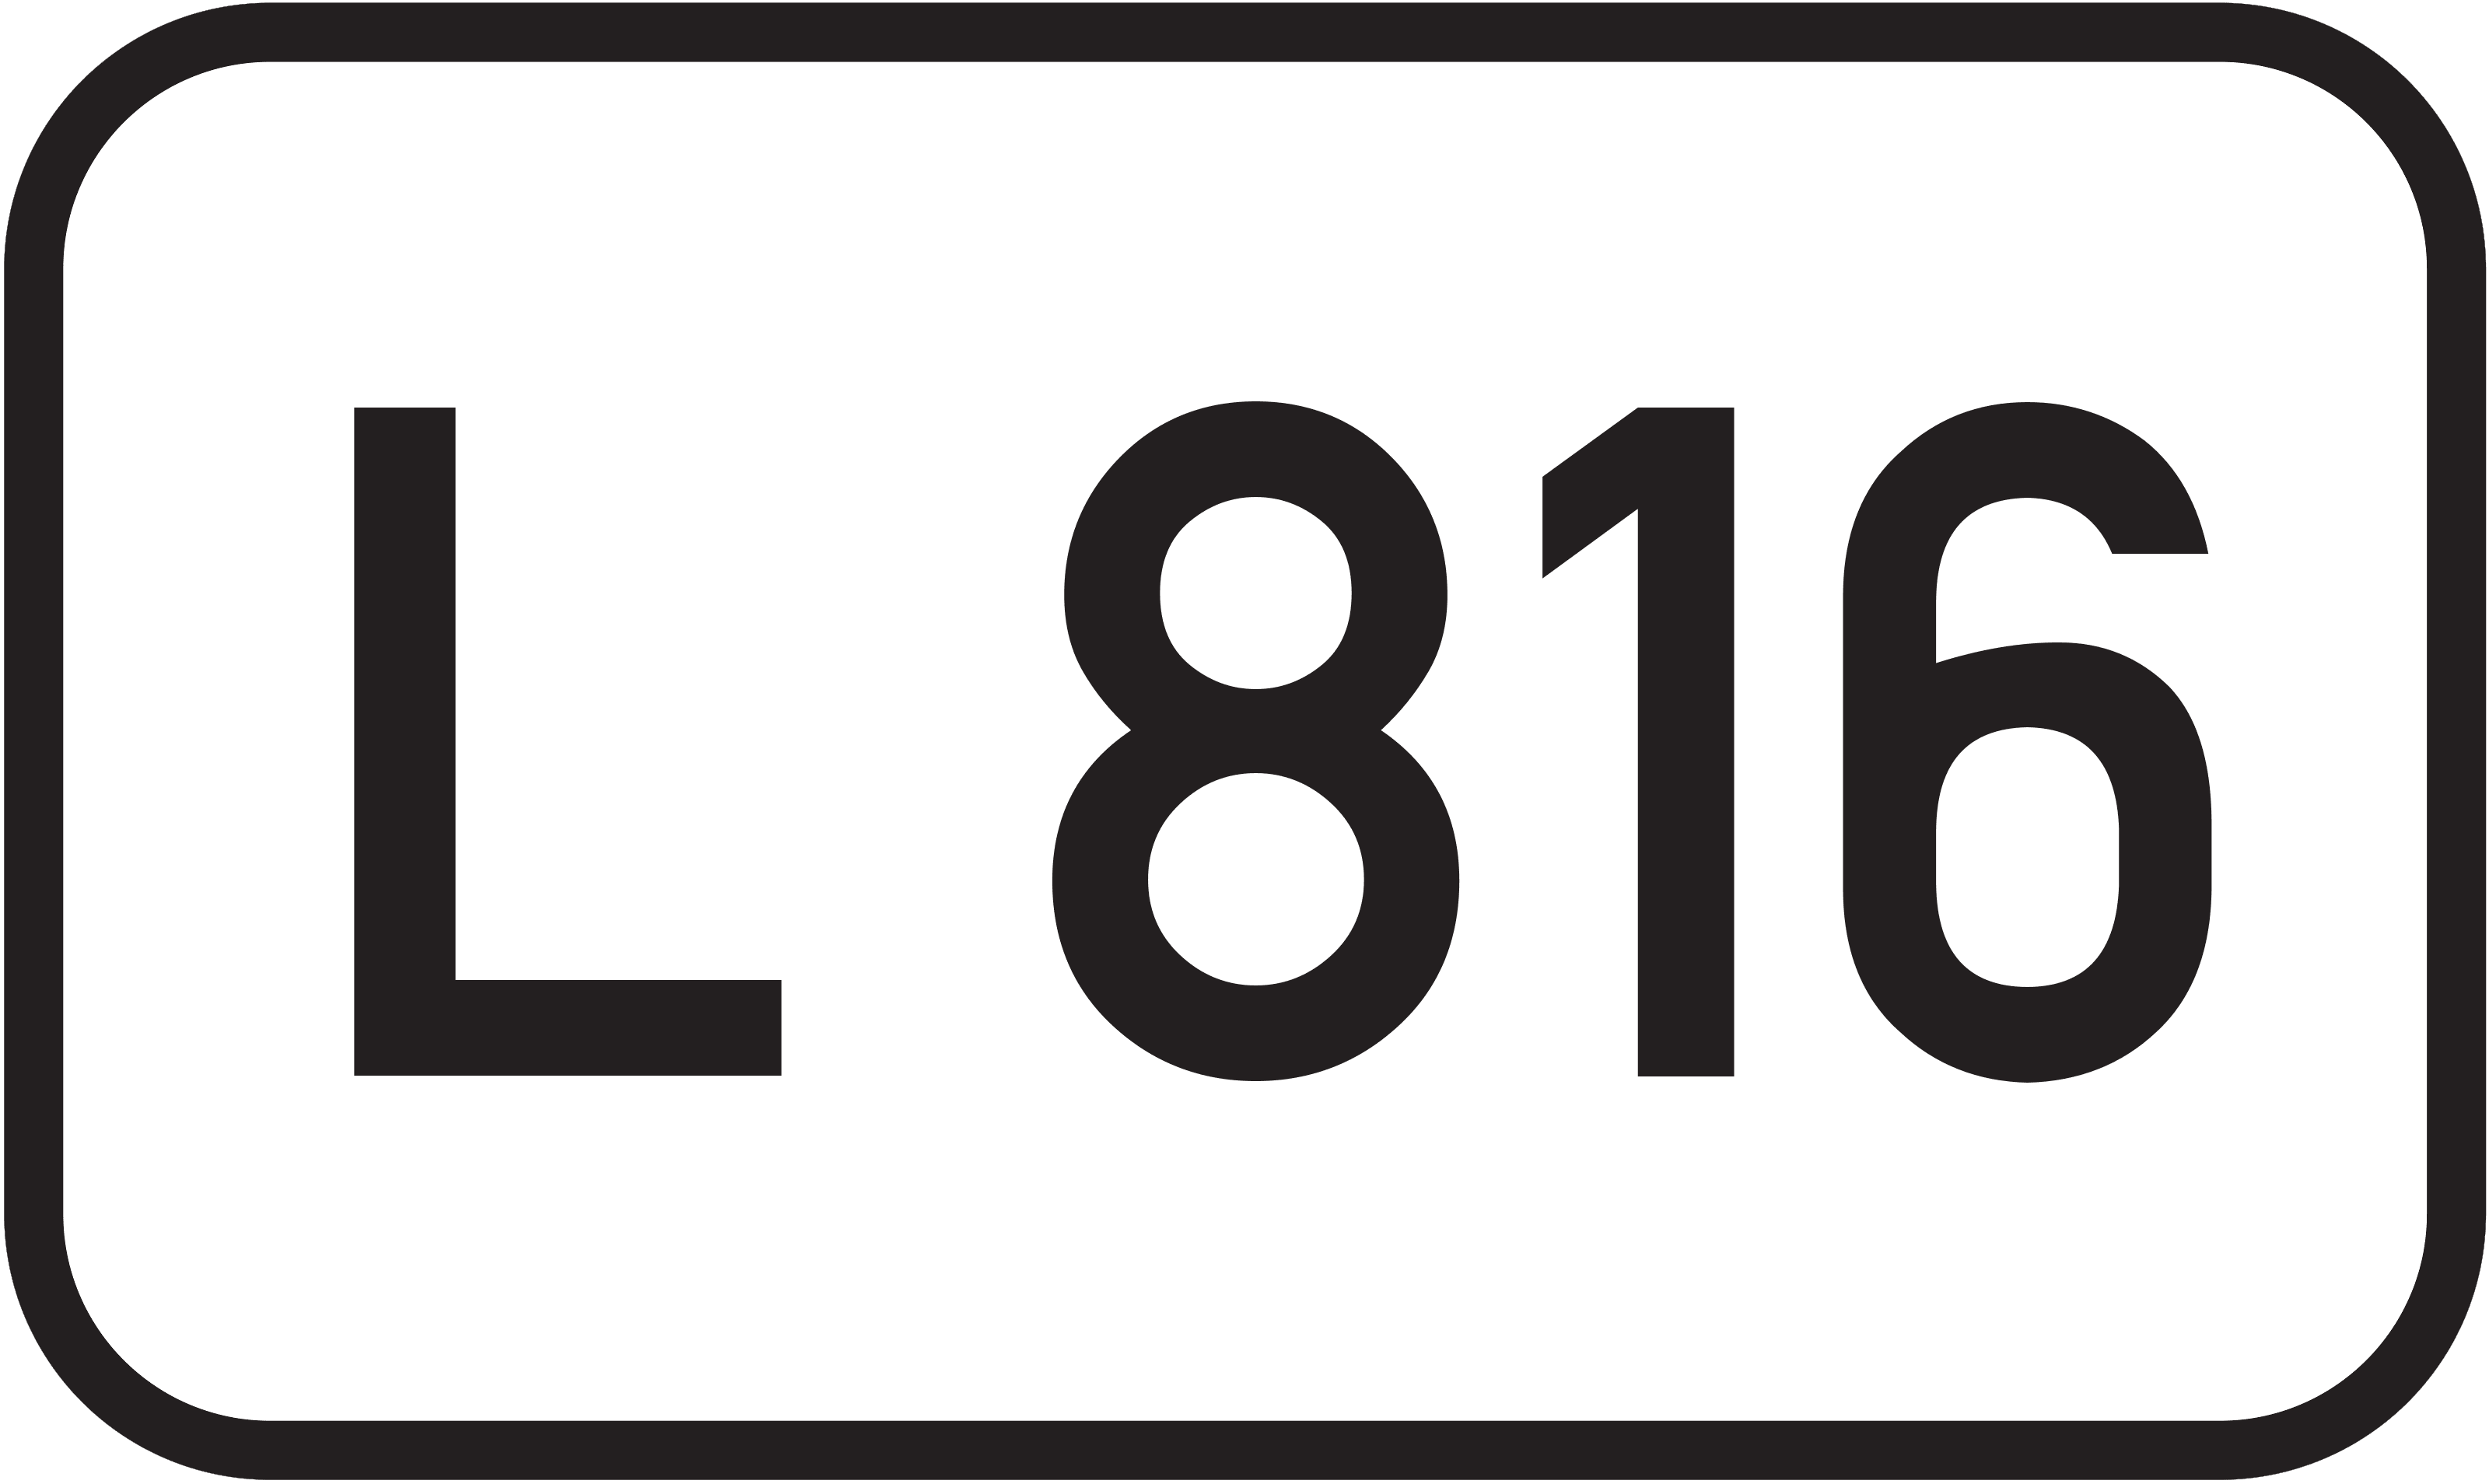 Landesstraße L 816